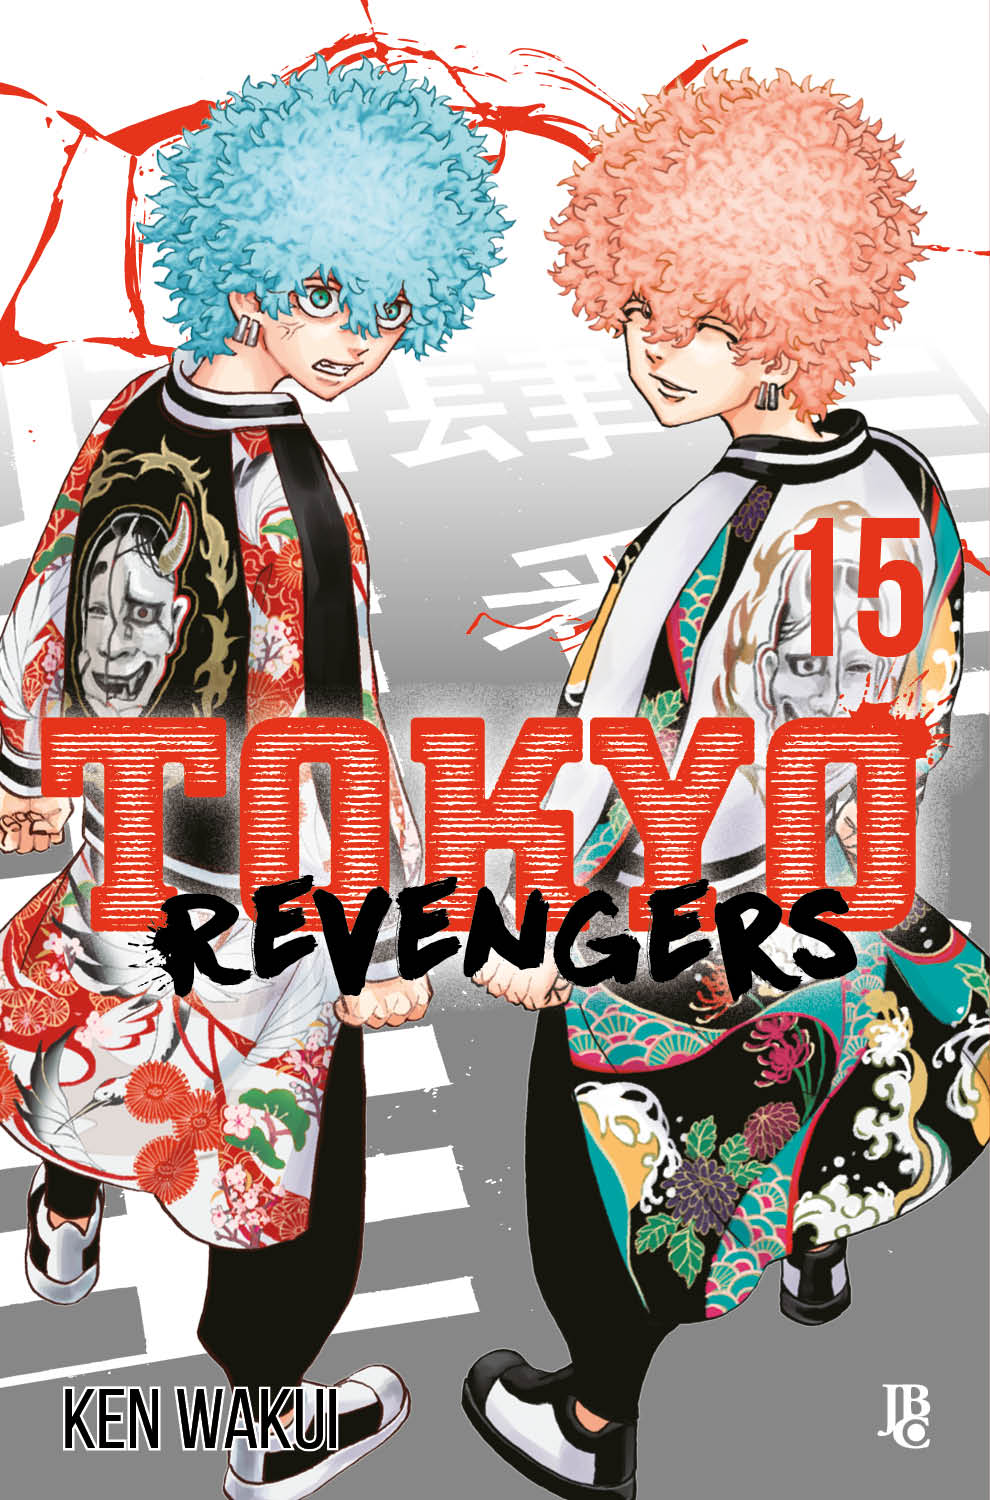 Tokyo Revengers - Episódio 15 do anime: Data de lançamento